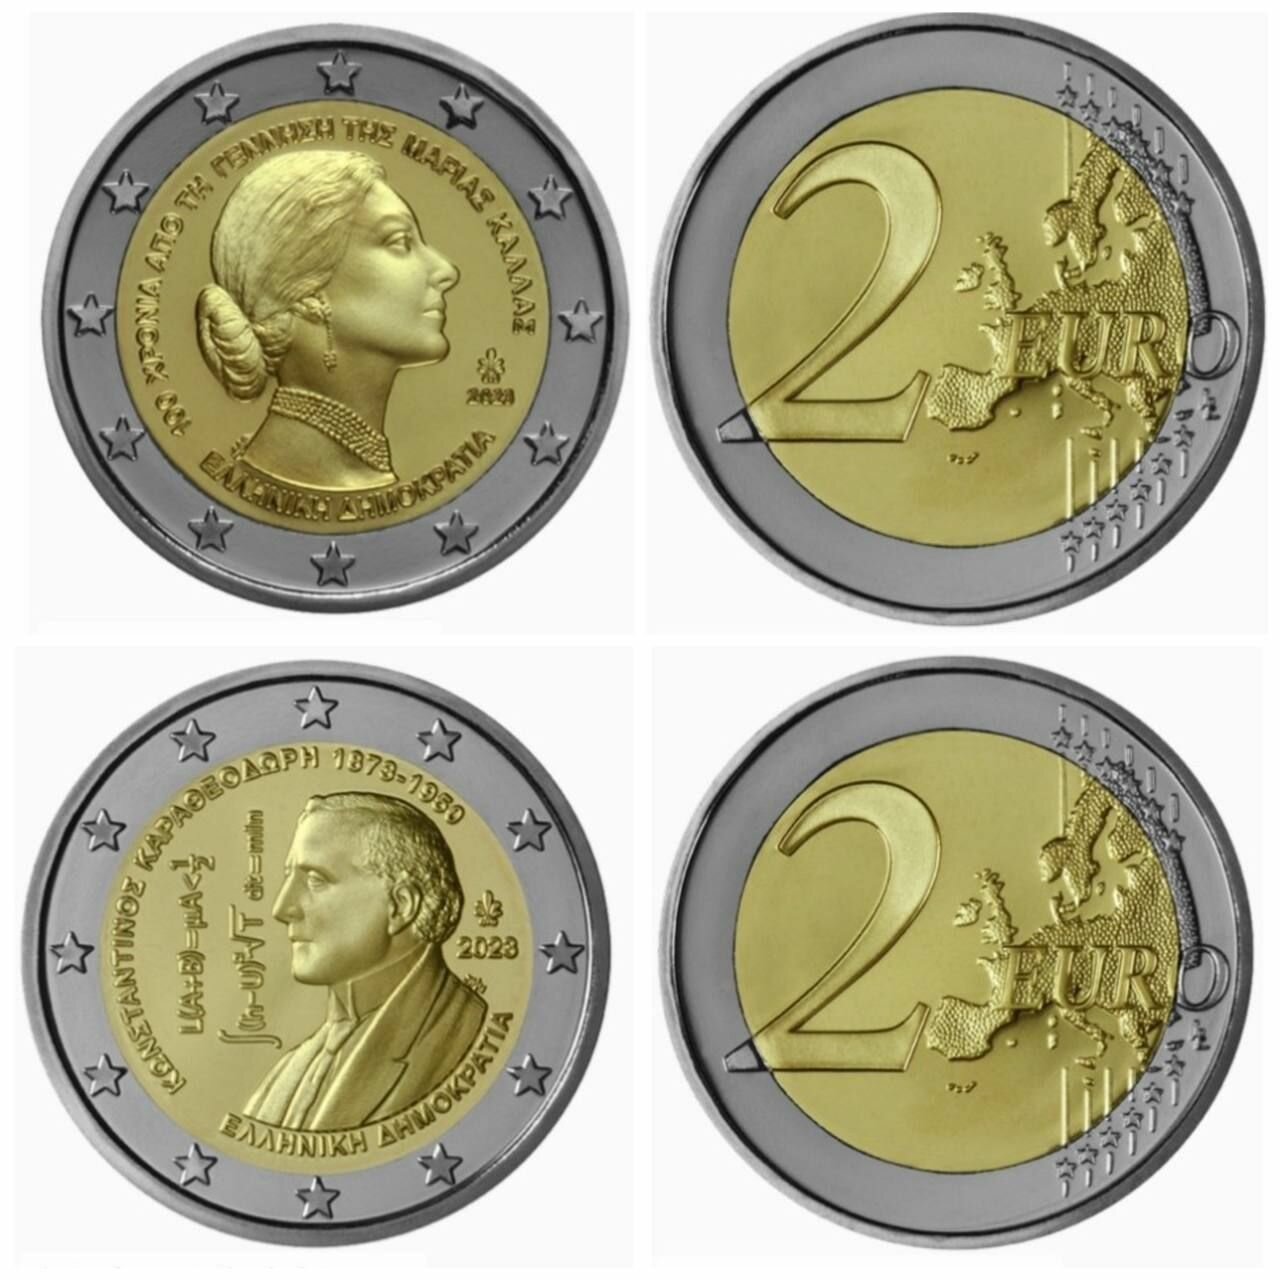 Набор из 2 монет - Греция 2 евро 2023 год UNC (Мария Каллас и Константин Каратеодори)